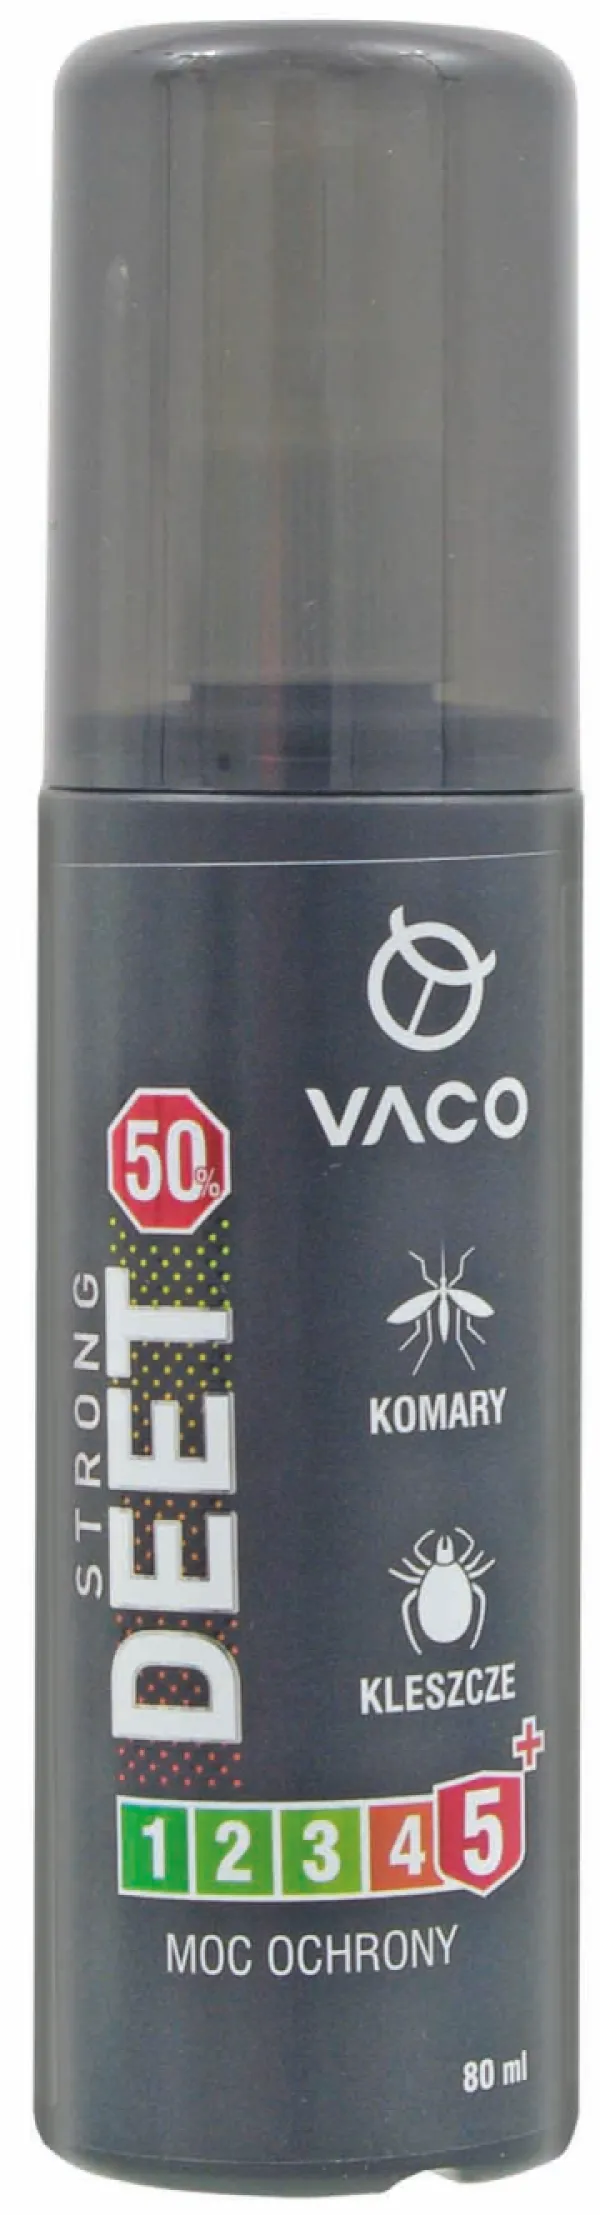 NextFish - Horgász webshop és horgászbolt - VACO Vaco Strong Spray 50% DEET Anti Insect + Geraniol 80ml